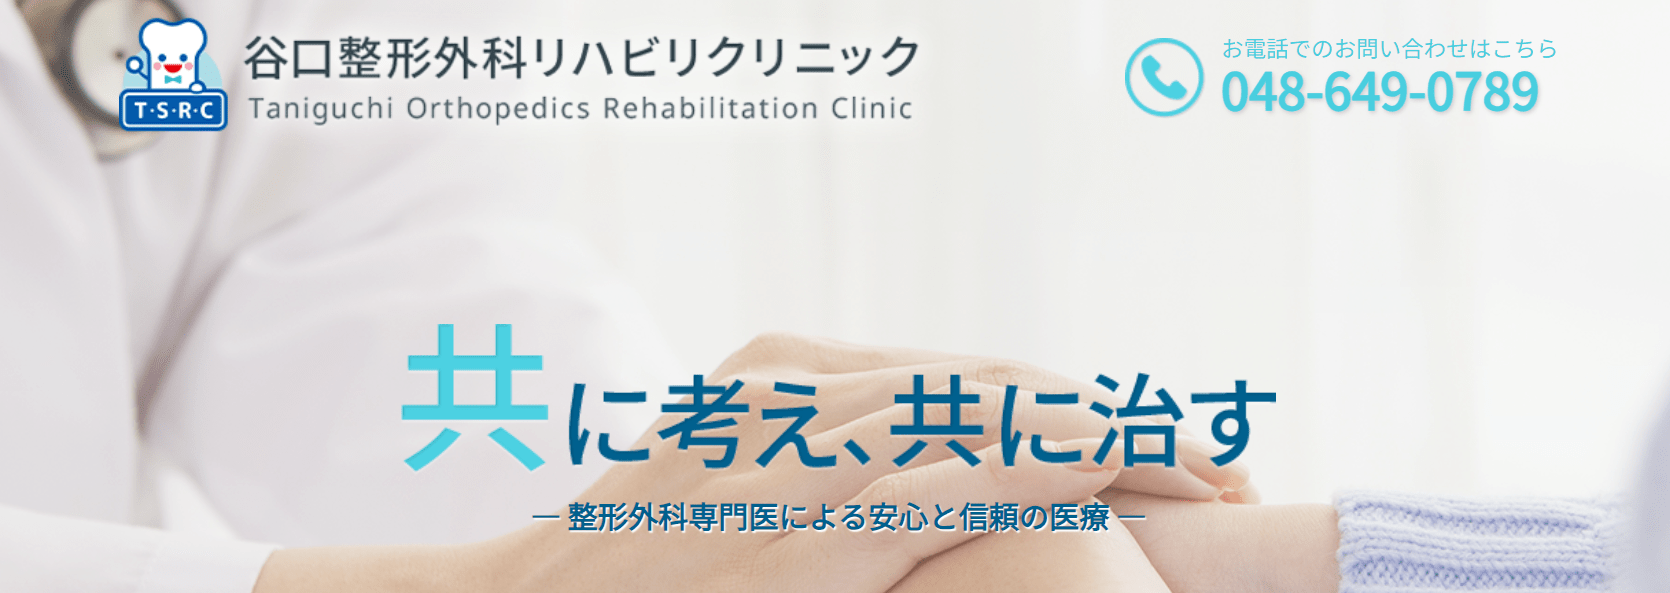 埼玉県で評判の膝関節治療におすすめのクリニック10選 谷口整形外科リハビリクリニック